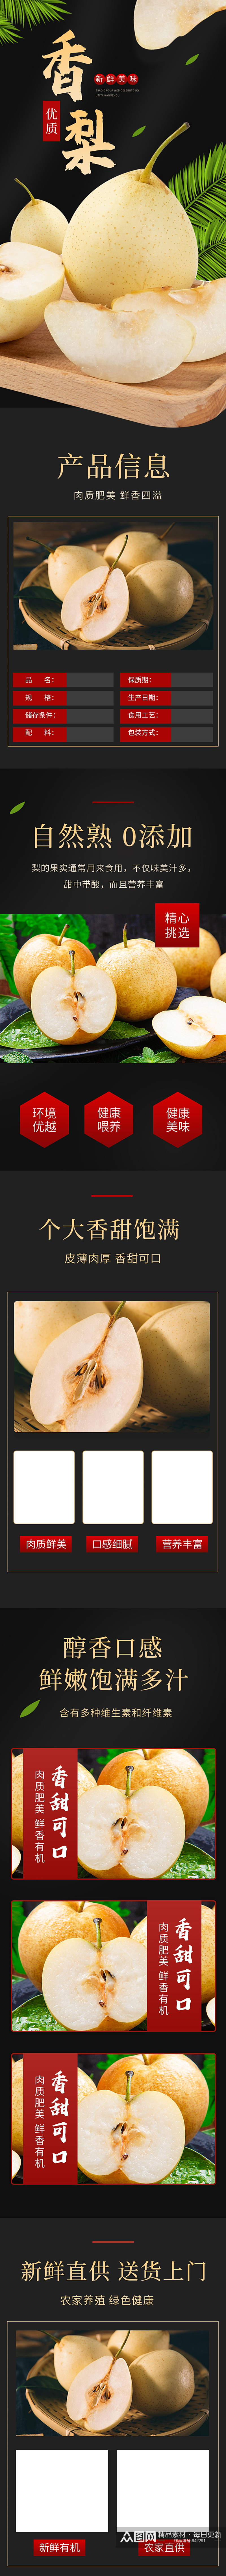 生鲜食品水果皇冠梨详情页素材